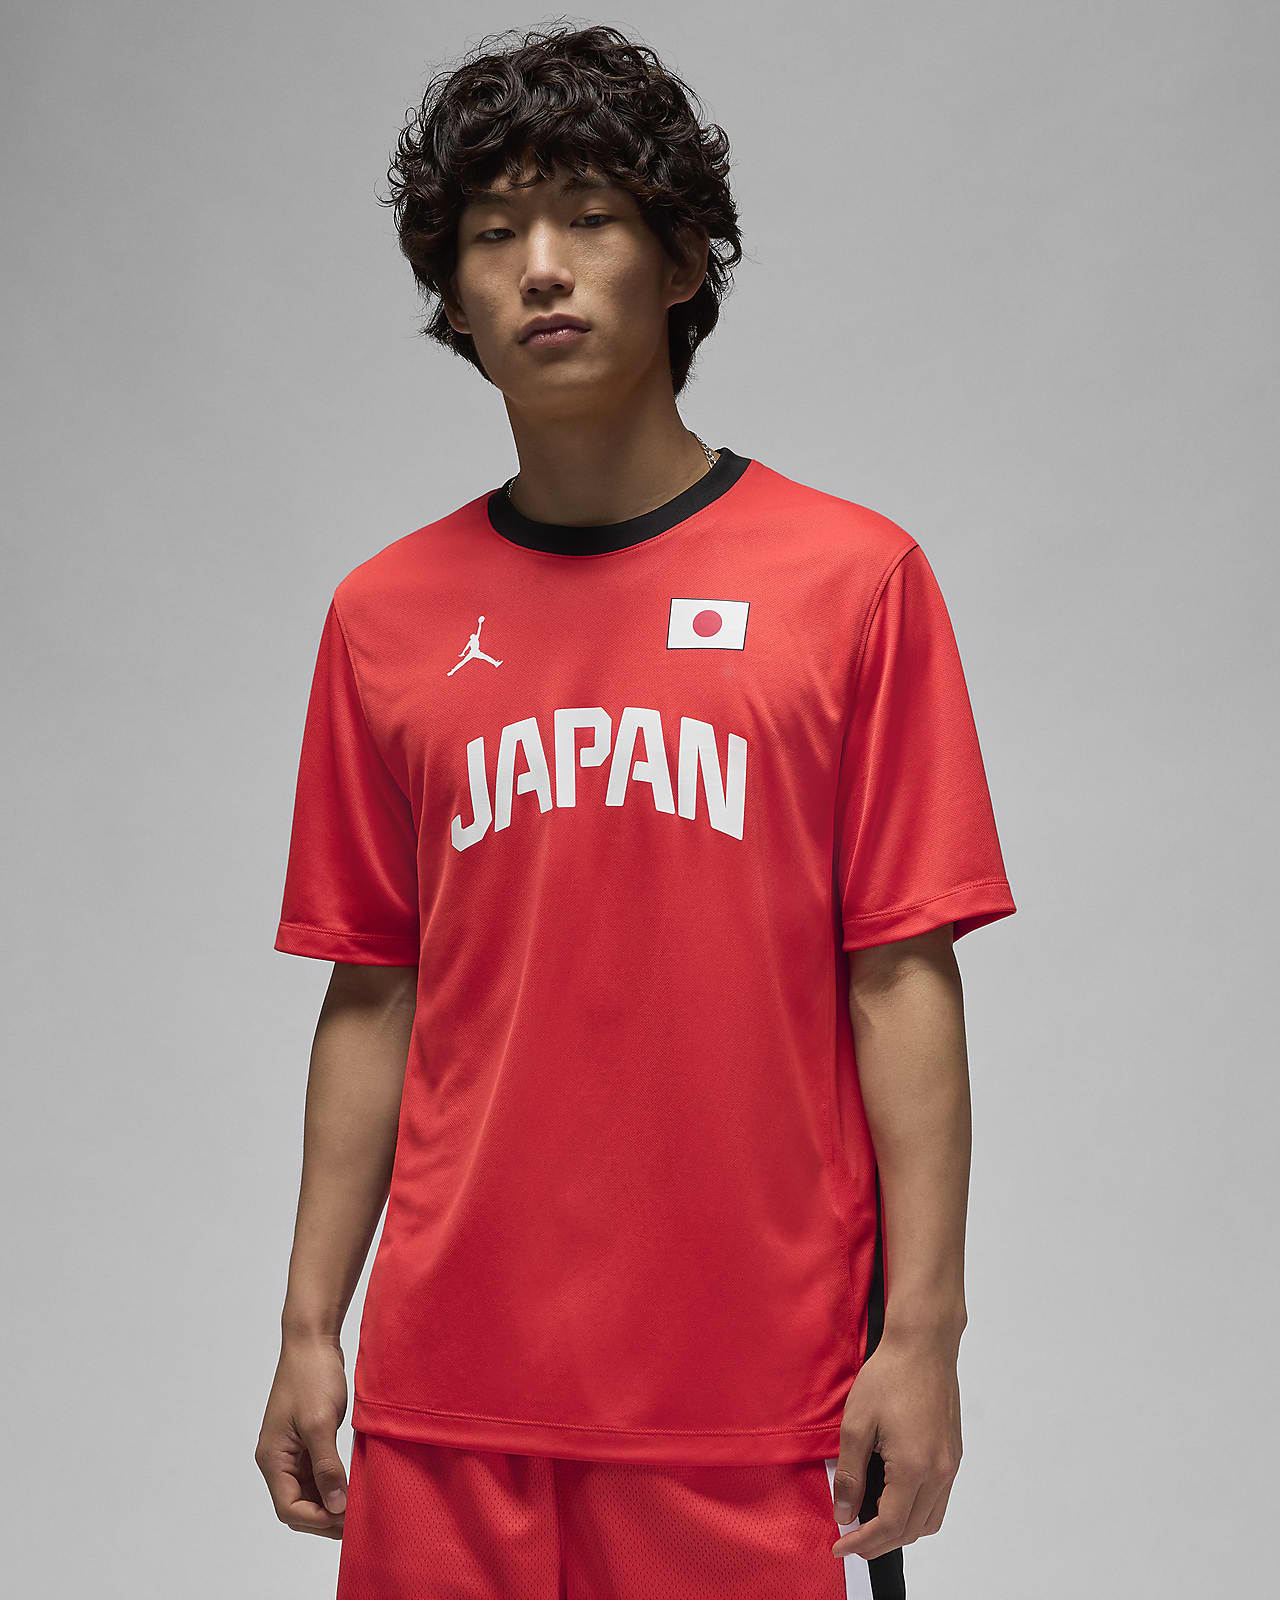 日本 メンズ ジョーダン Dri-FIT ADV バスケットボール ウォームアップ シャツ